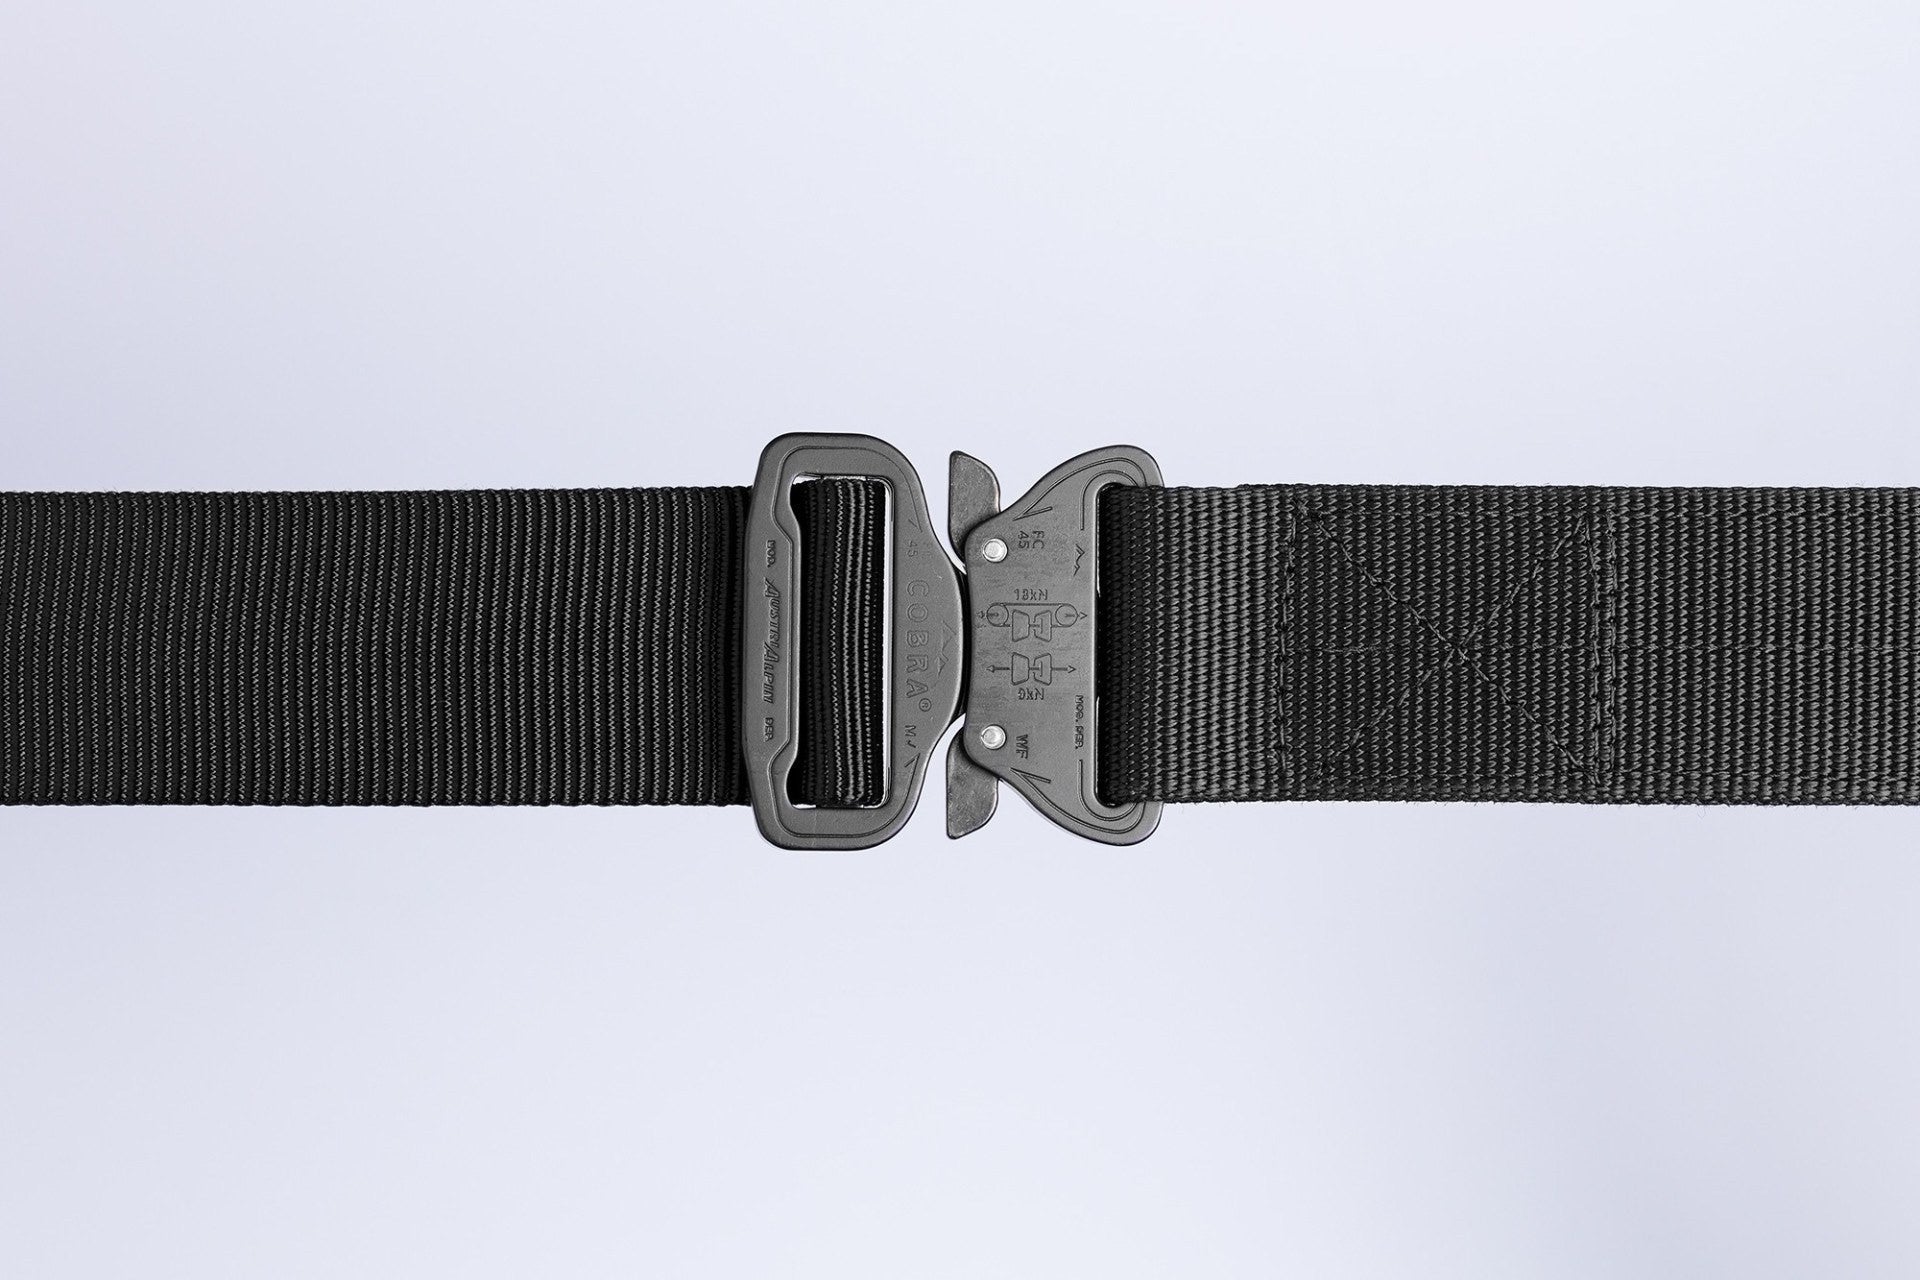 1.5 Klik Belts Cobra® Buckle Belts